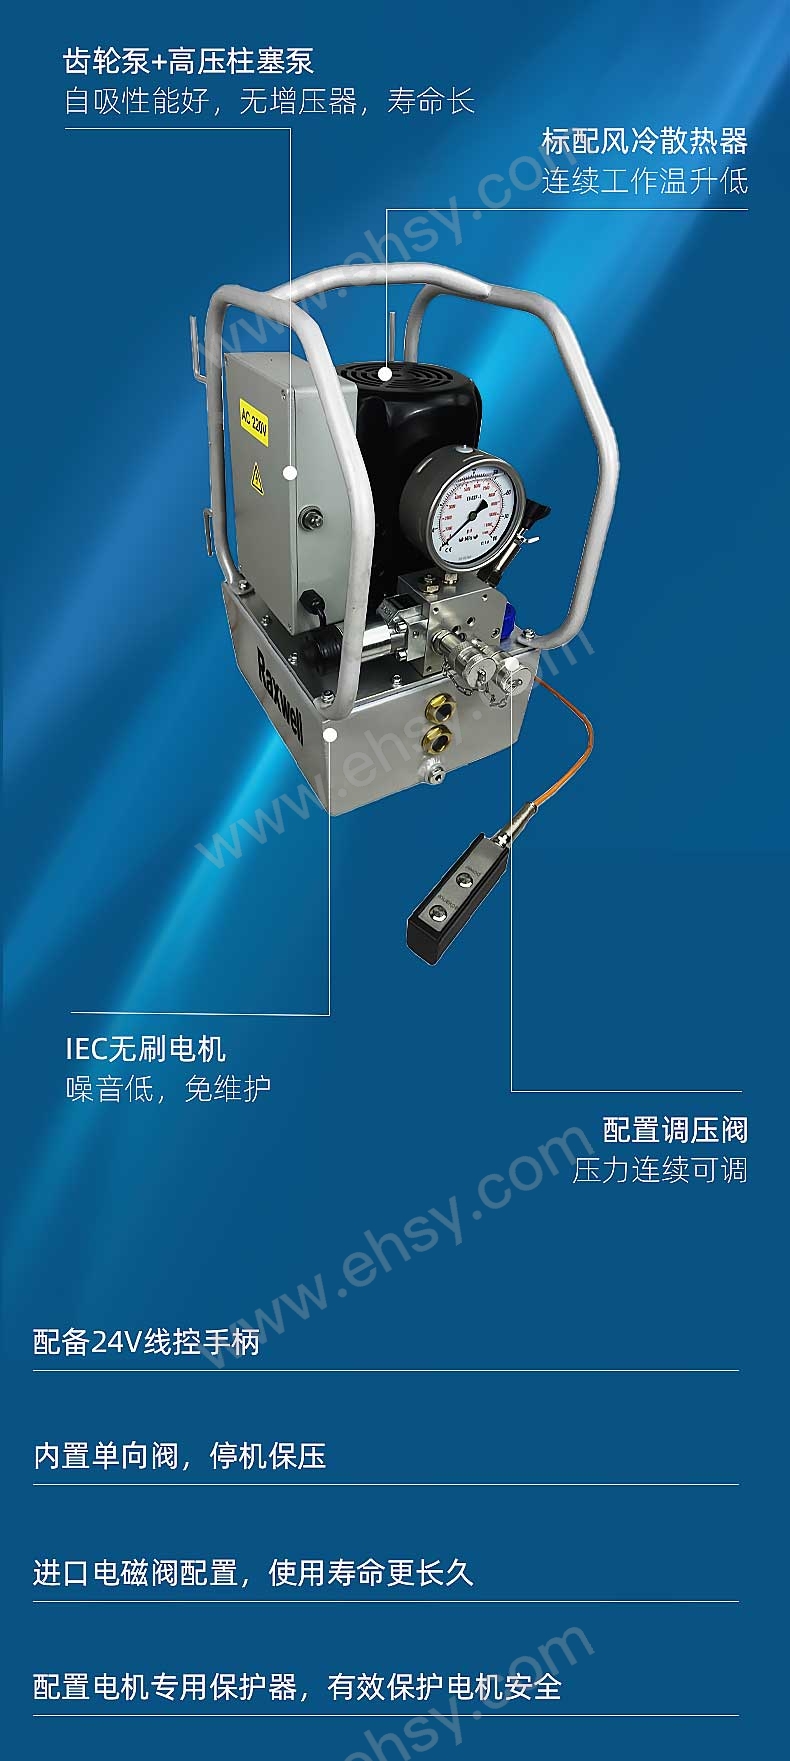 两口液压扳手专用电动泵RTHP0001_09.jpg